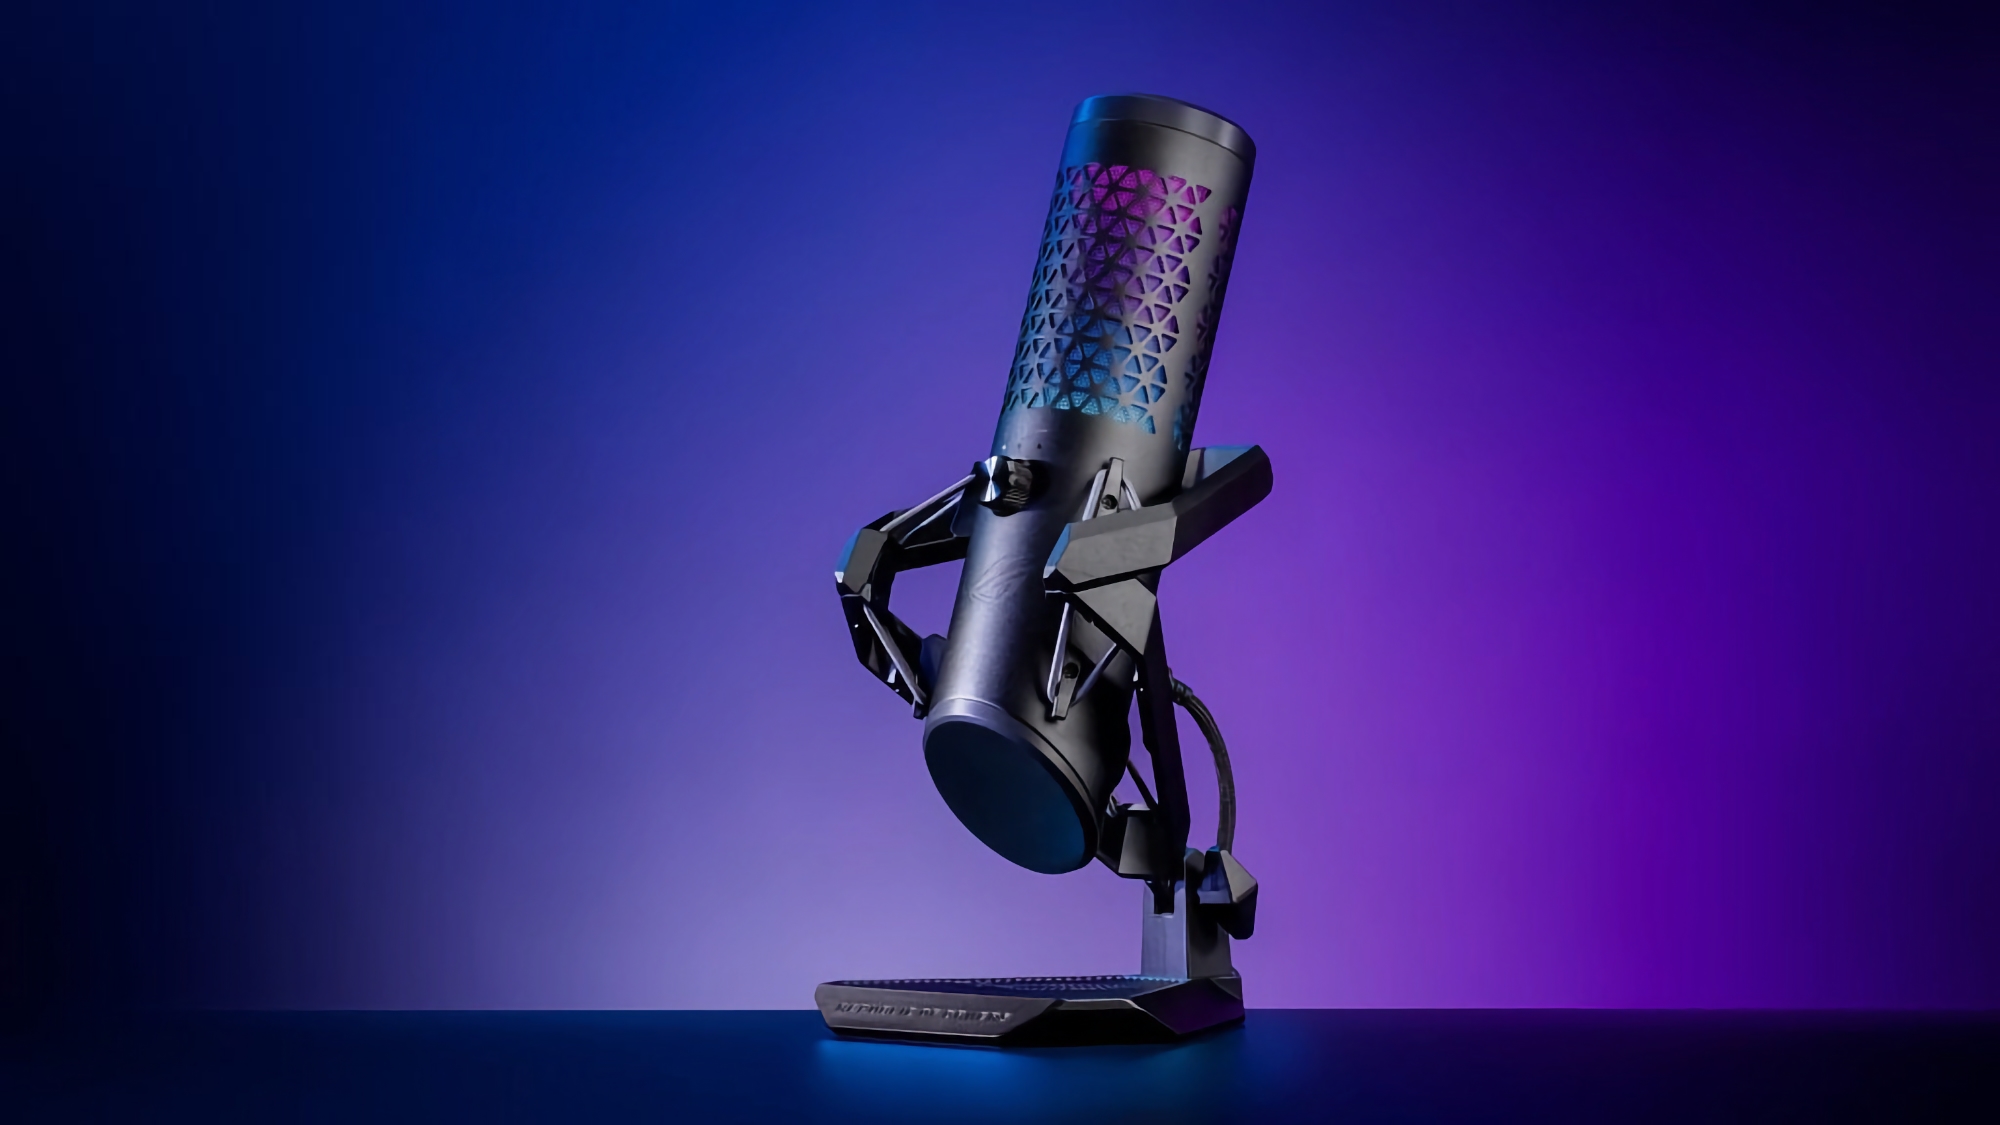 ASUS afslører ROG Carnyx gaming-mikrofon til 179 dollars